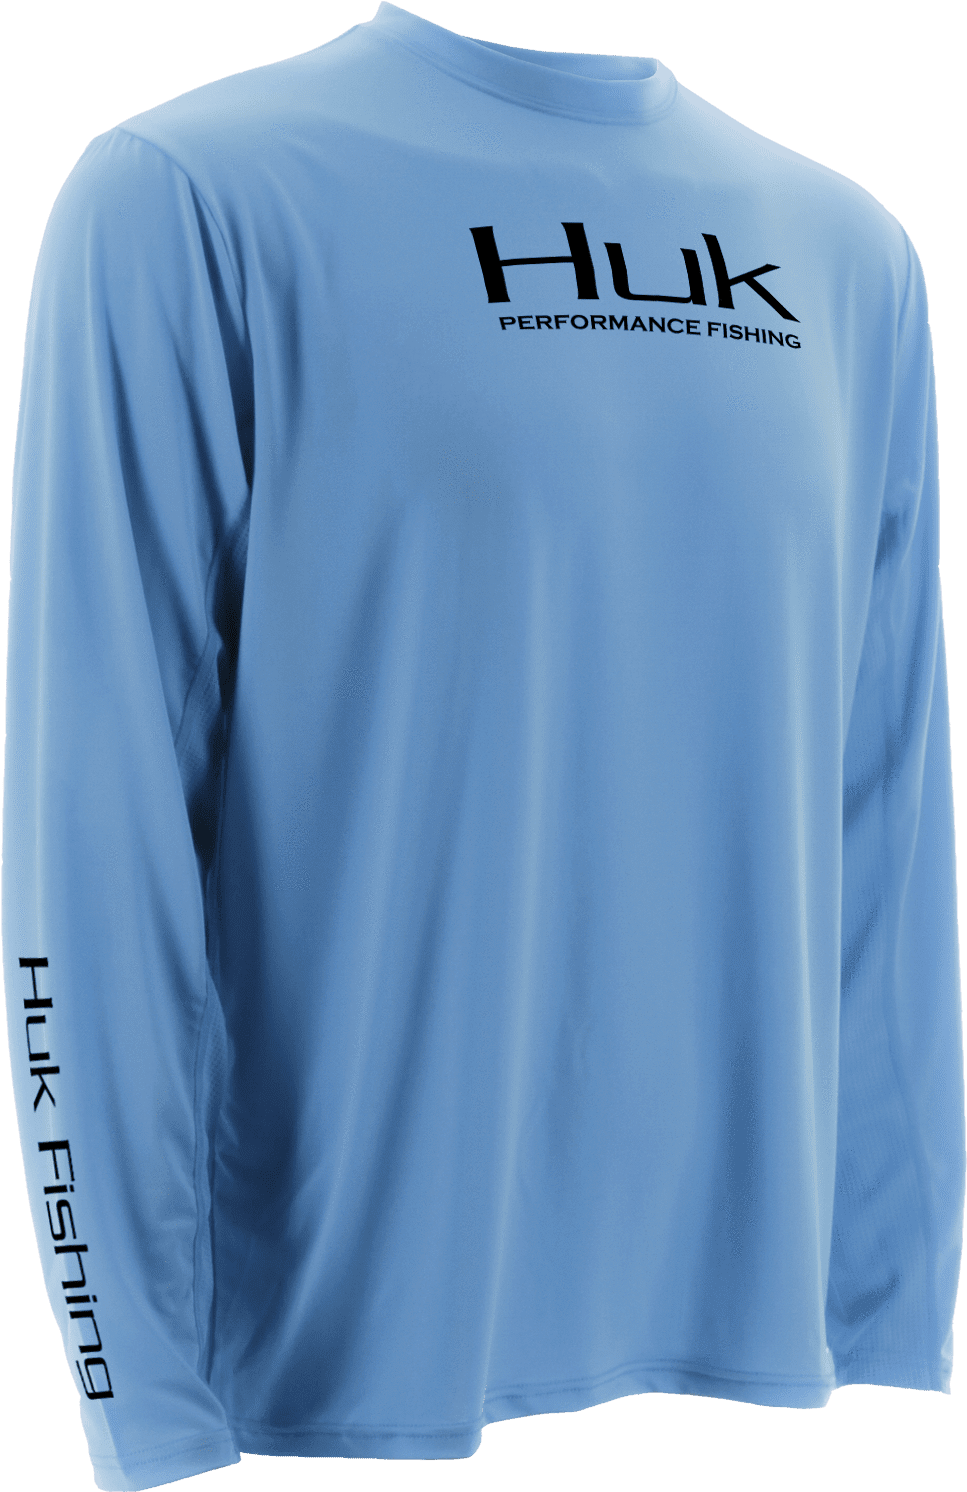 Download Huk Long Sleeve Fishing Shirts PNG Image with No